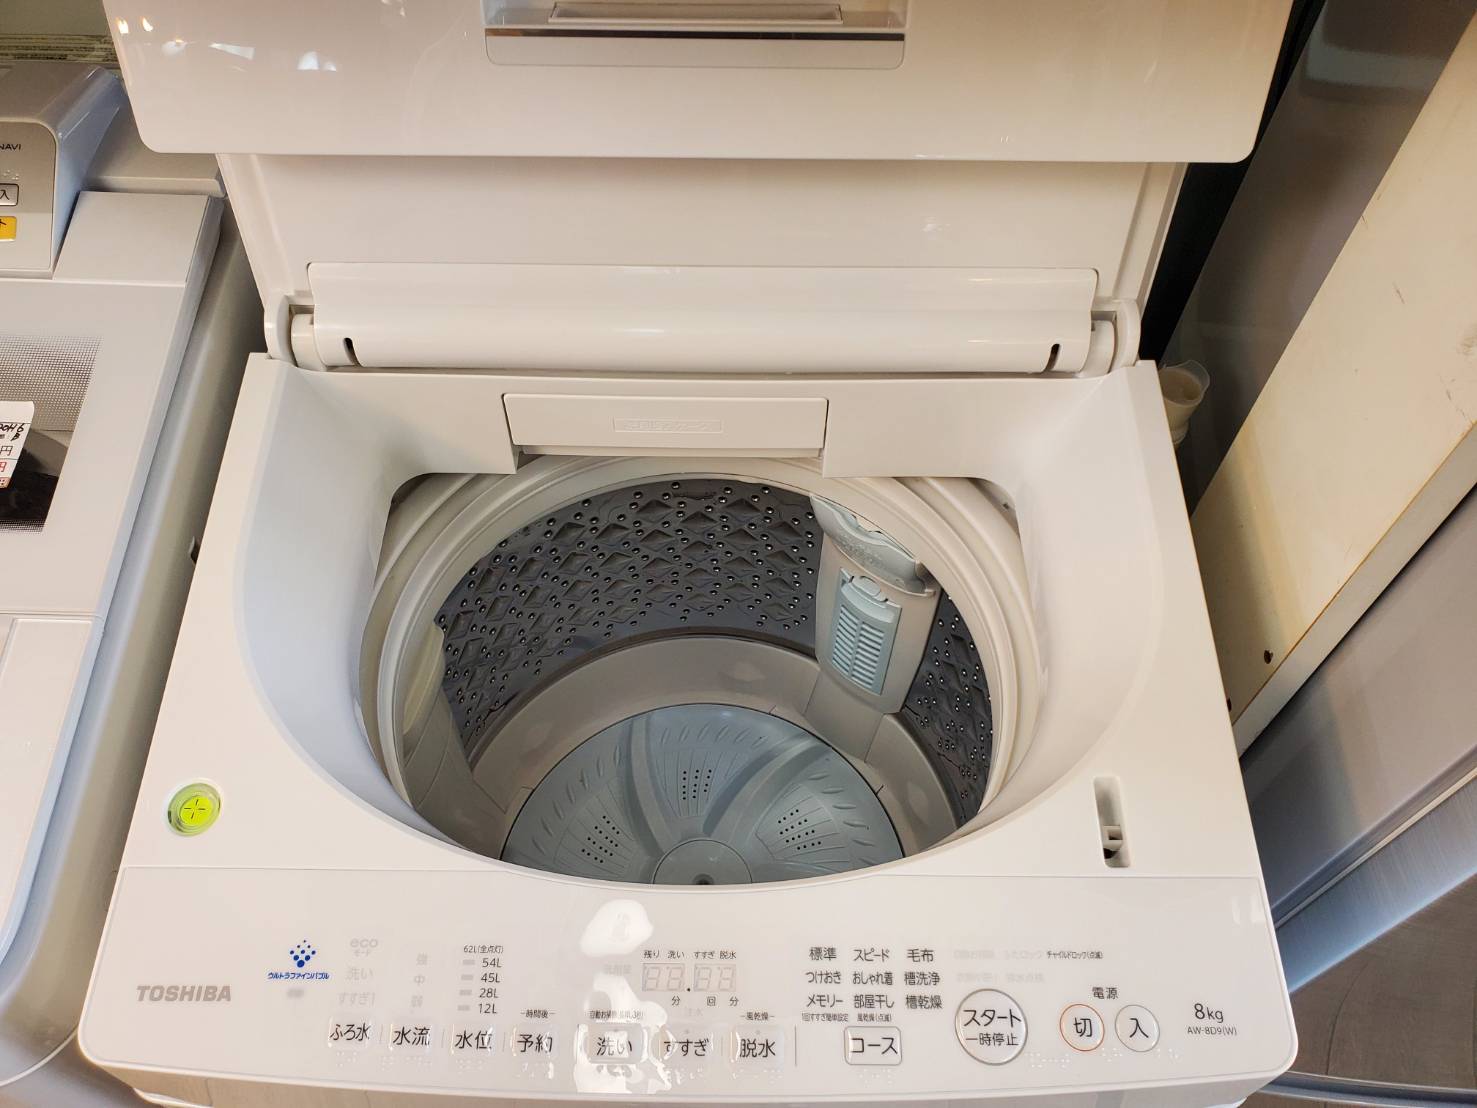 ホワイト東芝 TOSHIBA 電気洗濯機 AW-BK8D8 ウルトラファインバブル ...